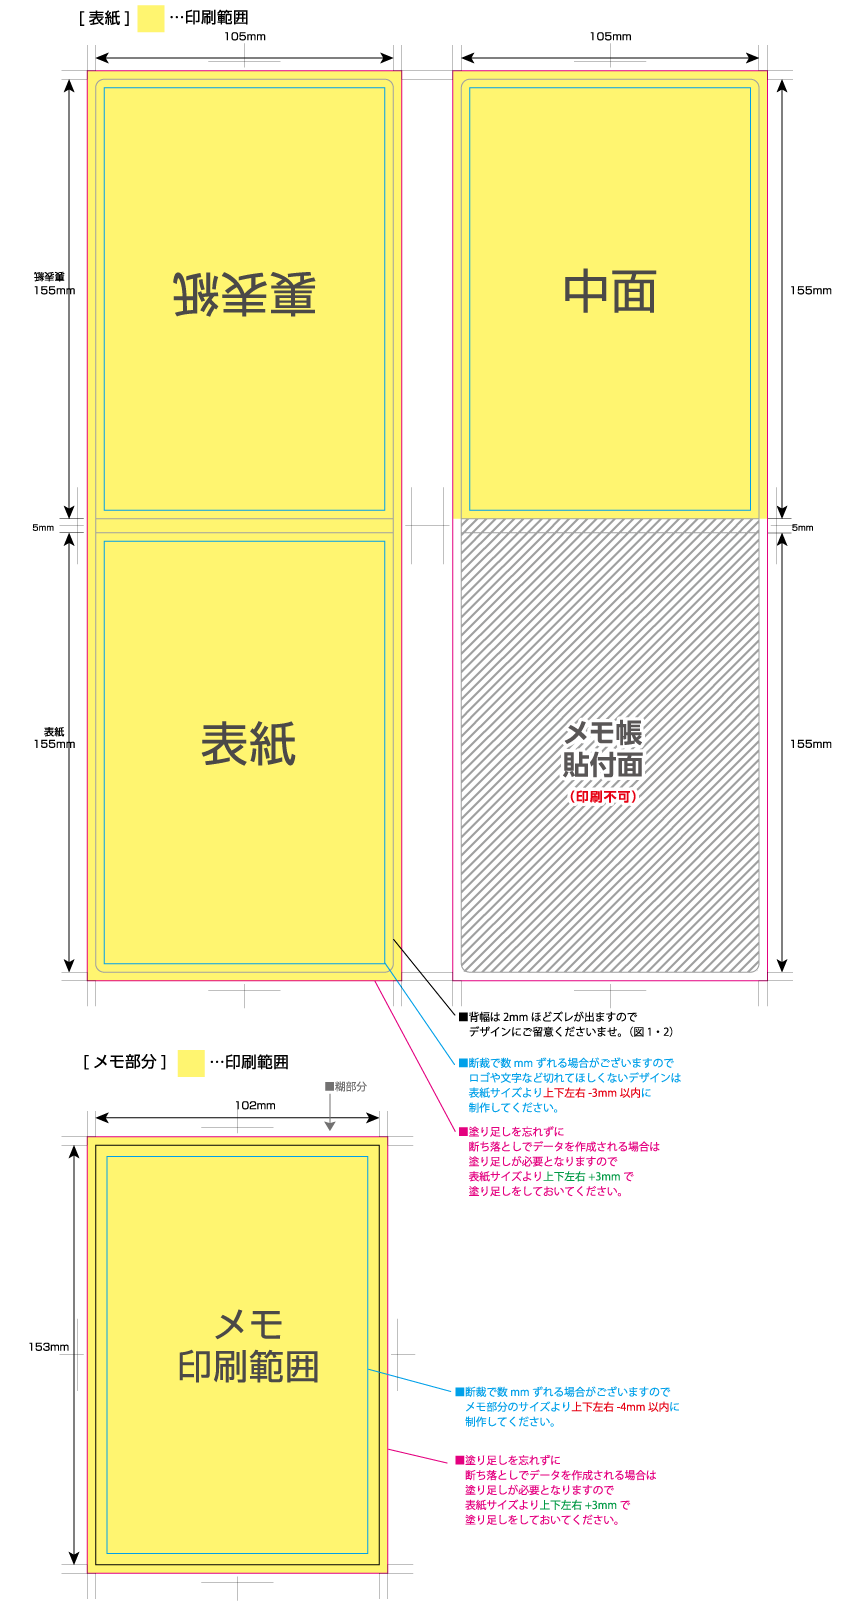 カバー付クラフトメモ [短辺A6サイズ] 黄色の部分は印刷範囲です。